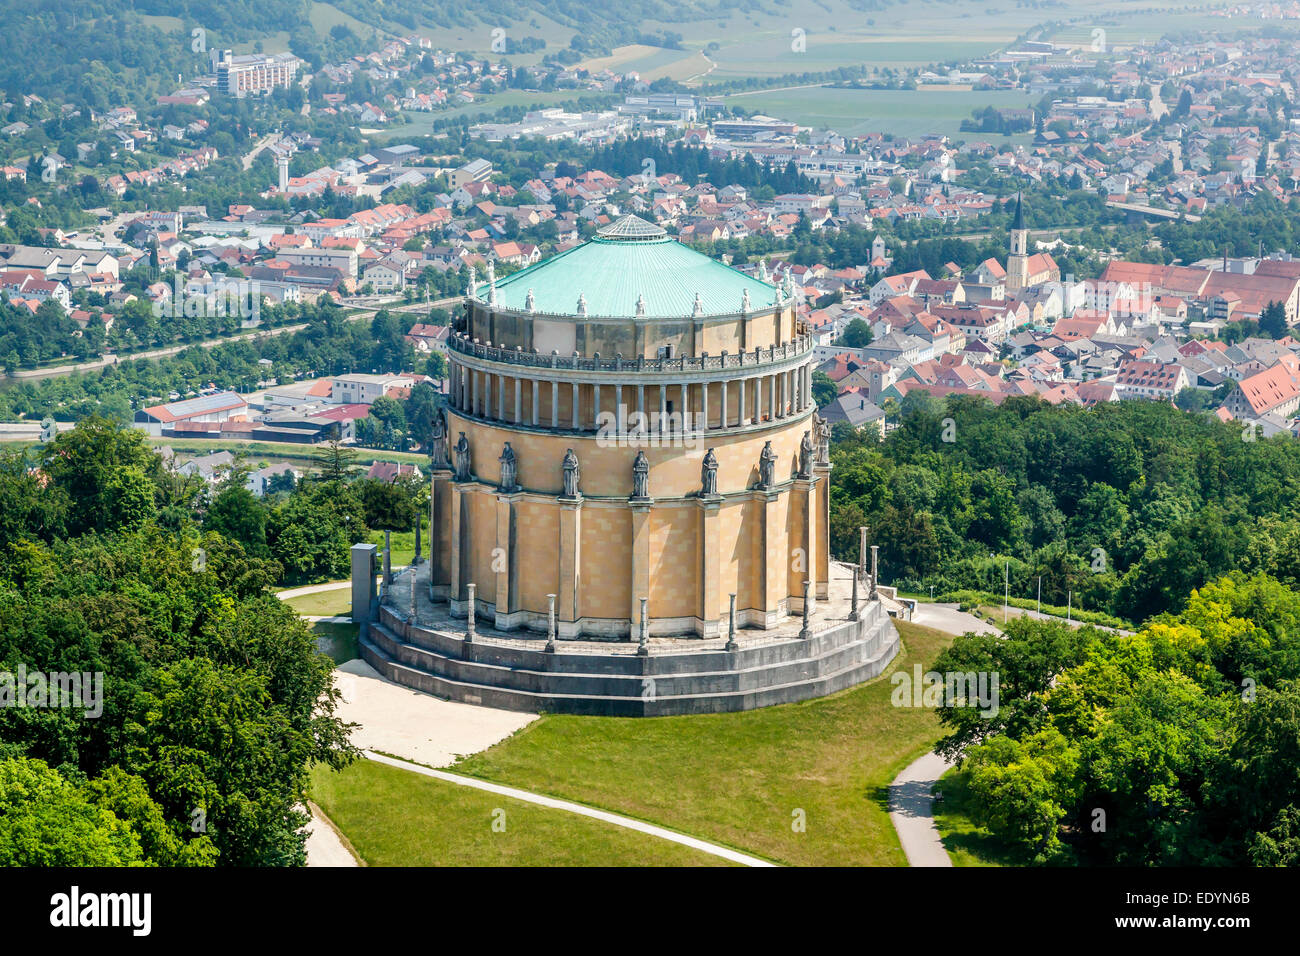 Luftaufnahme, Sinnspruch oder Halle der Befreiung, Kelheim, Bayern, Deutschland Stockfoto